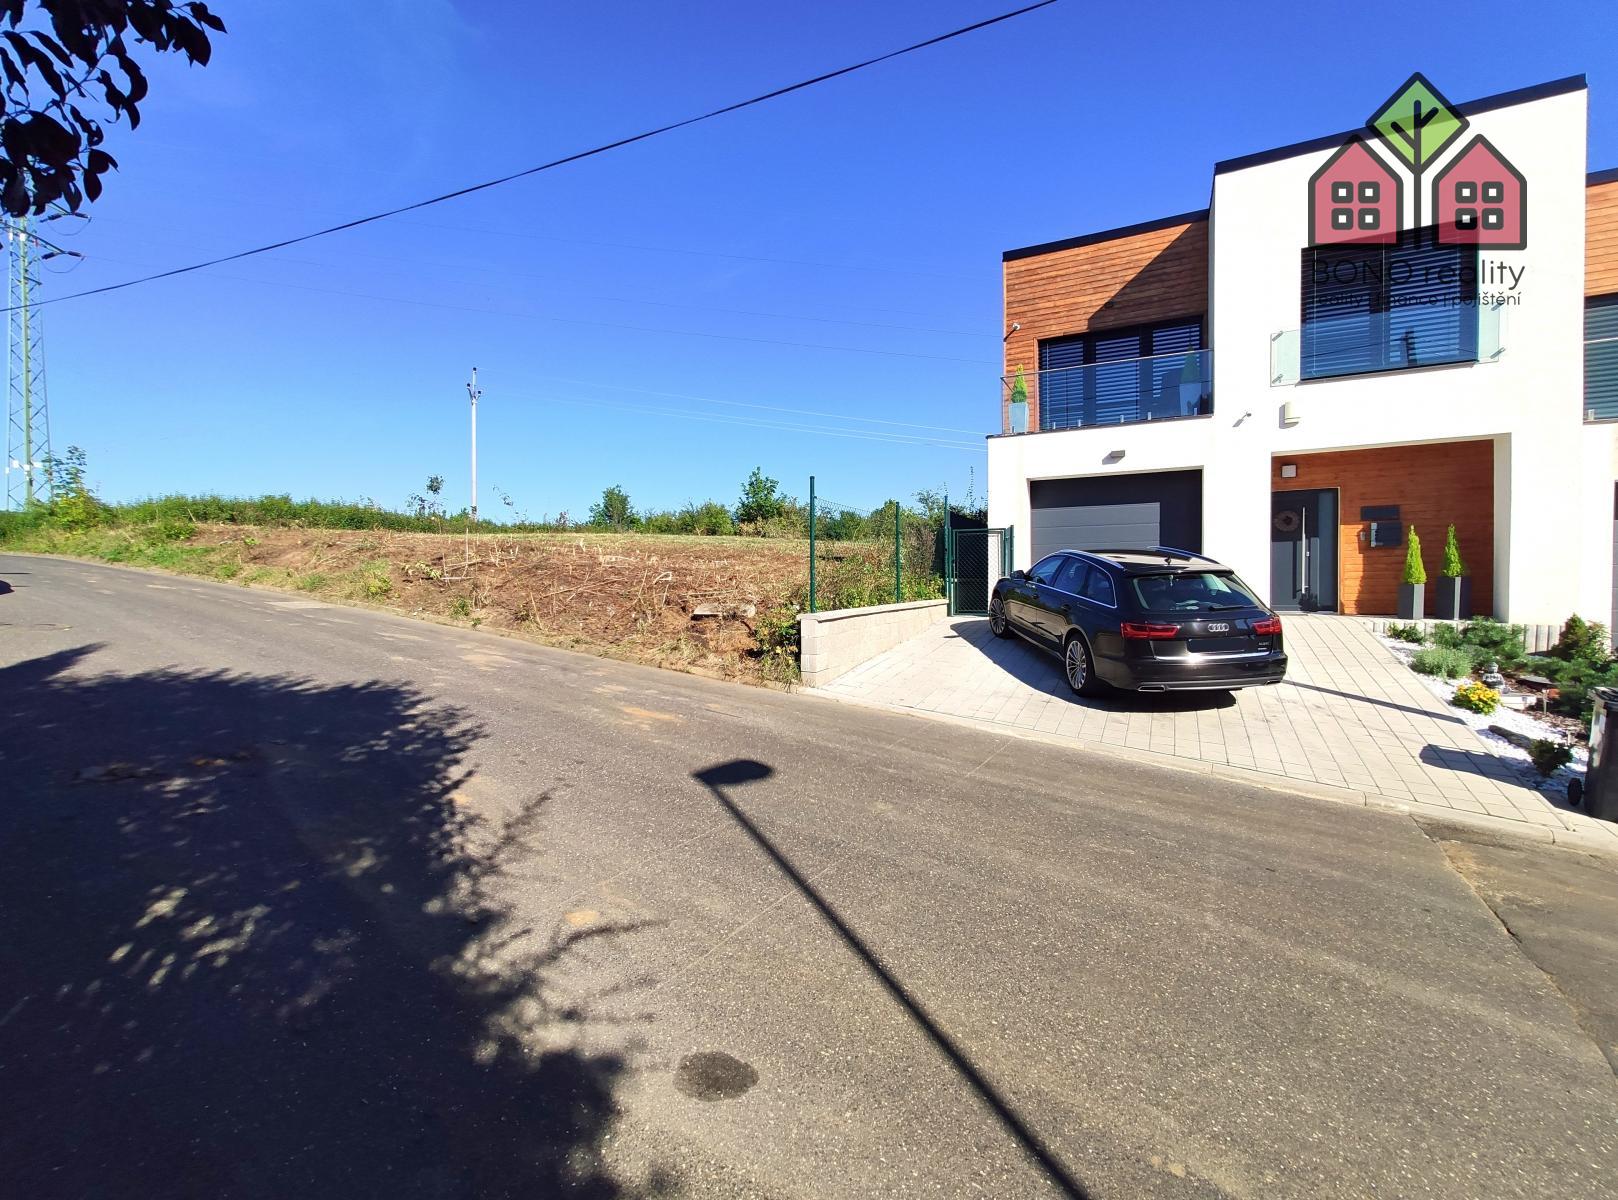 Stavební pozemek, 779 m2, inženýrské sítě v dosahu, vilová část Nové Trnovany, Teplice. , obrázek č. 2